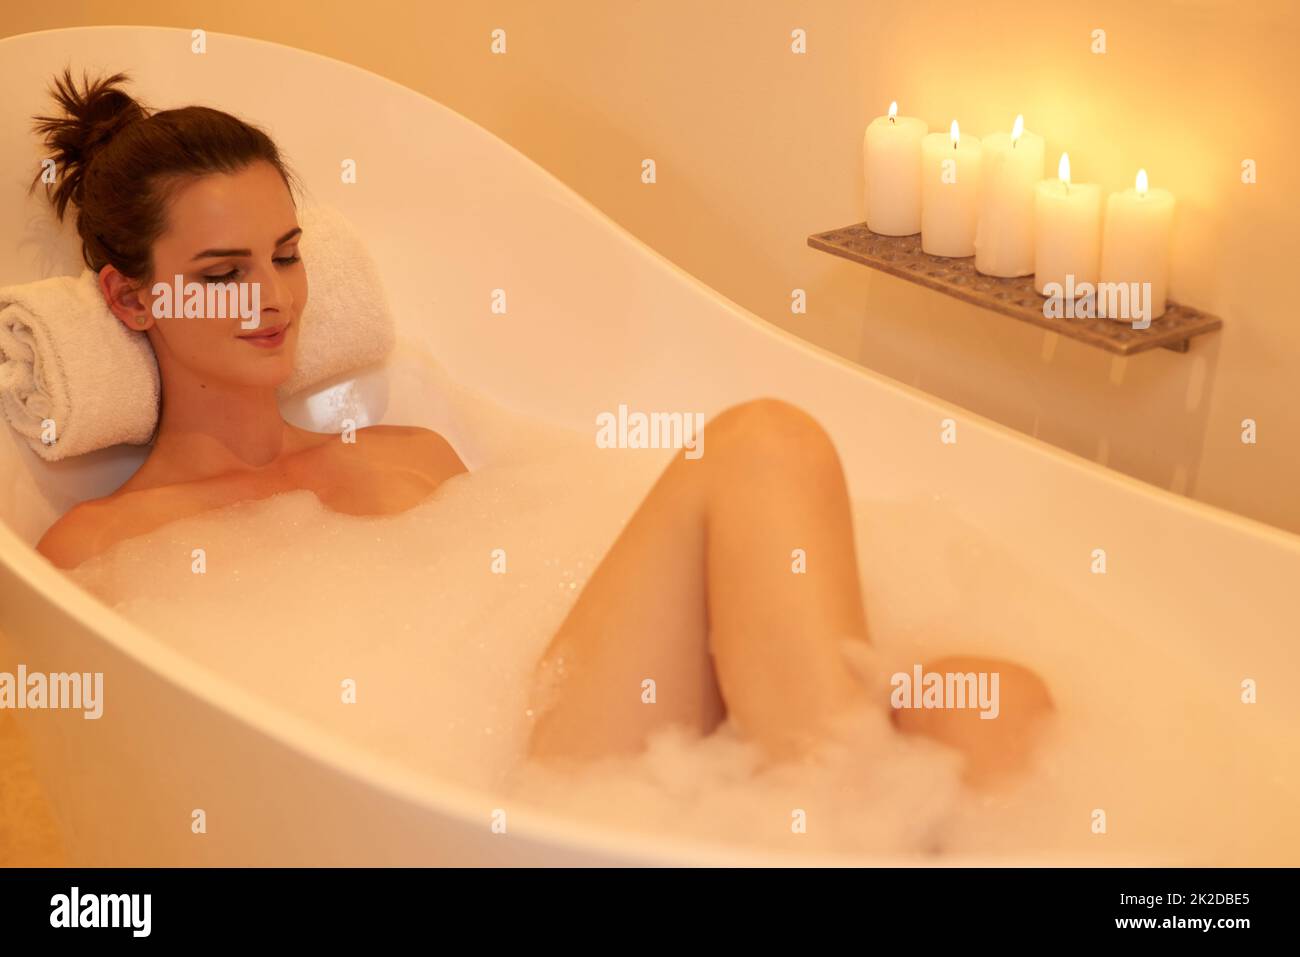 Le moyen idéal de terminer la journée. Photo en grand angle d'une jeune femme attirante prenant un bain de bulles. Banque D'Images